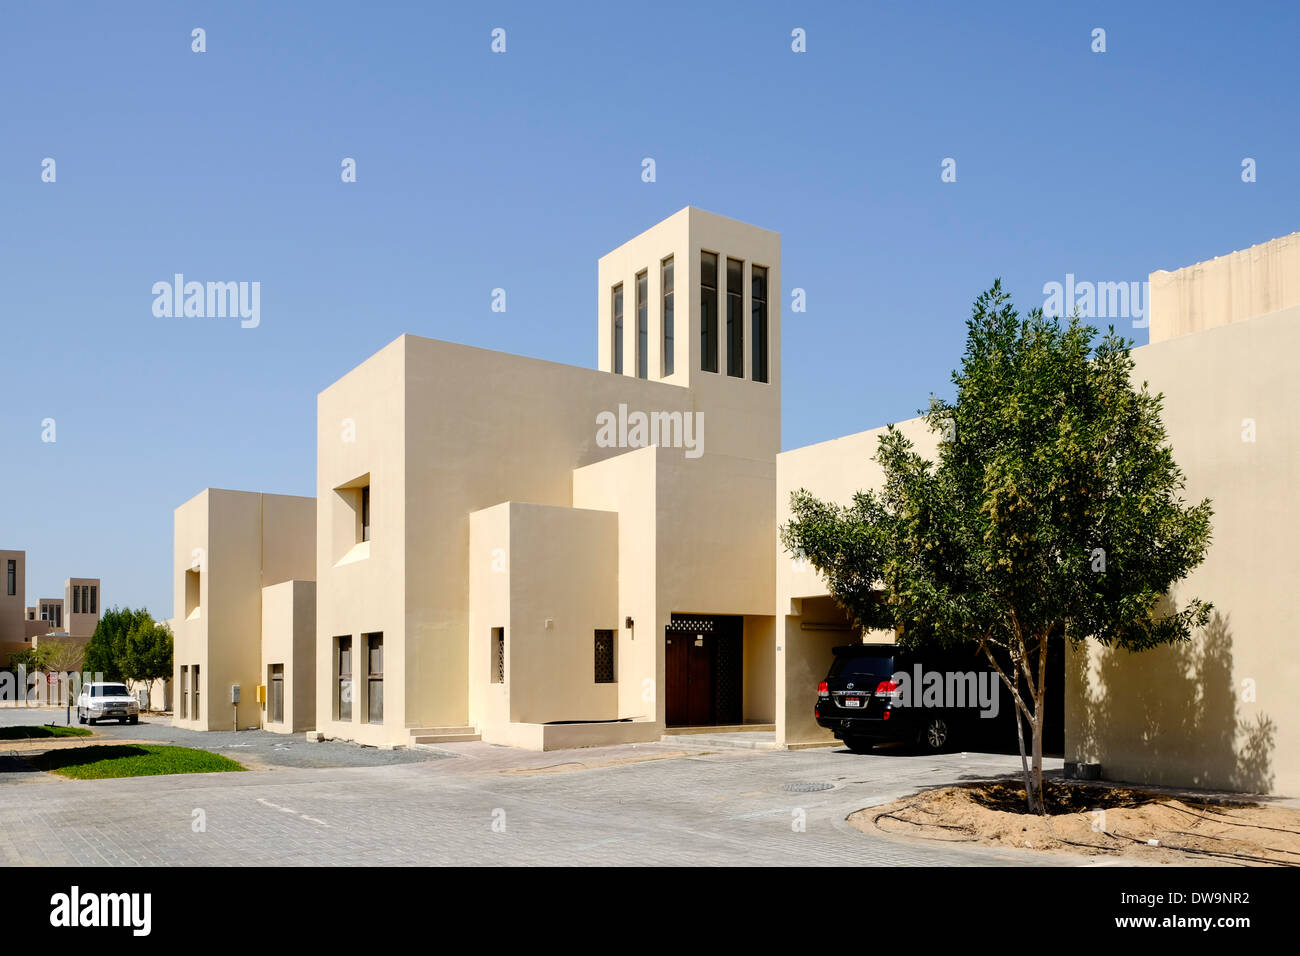 Nouvelles villas dans quartier résidentiel construit pour les familles Emirati sur île de Yas, à Abu Dhabi Emirats Arabes Unis Banque D'Images